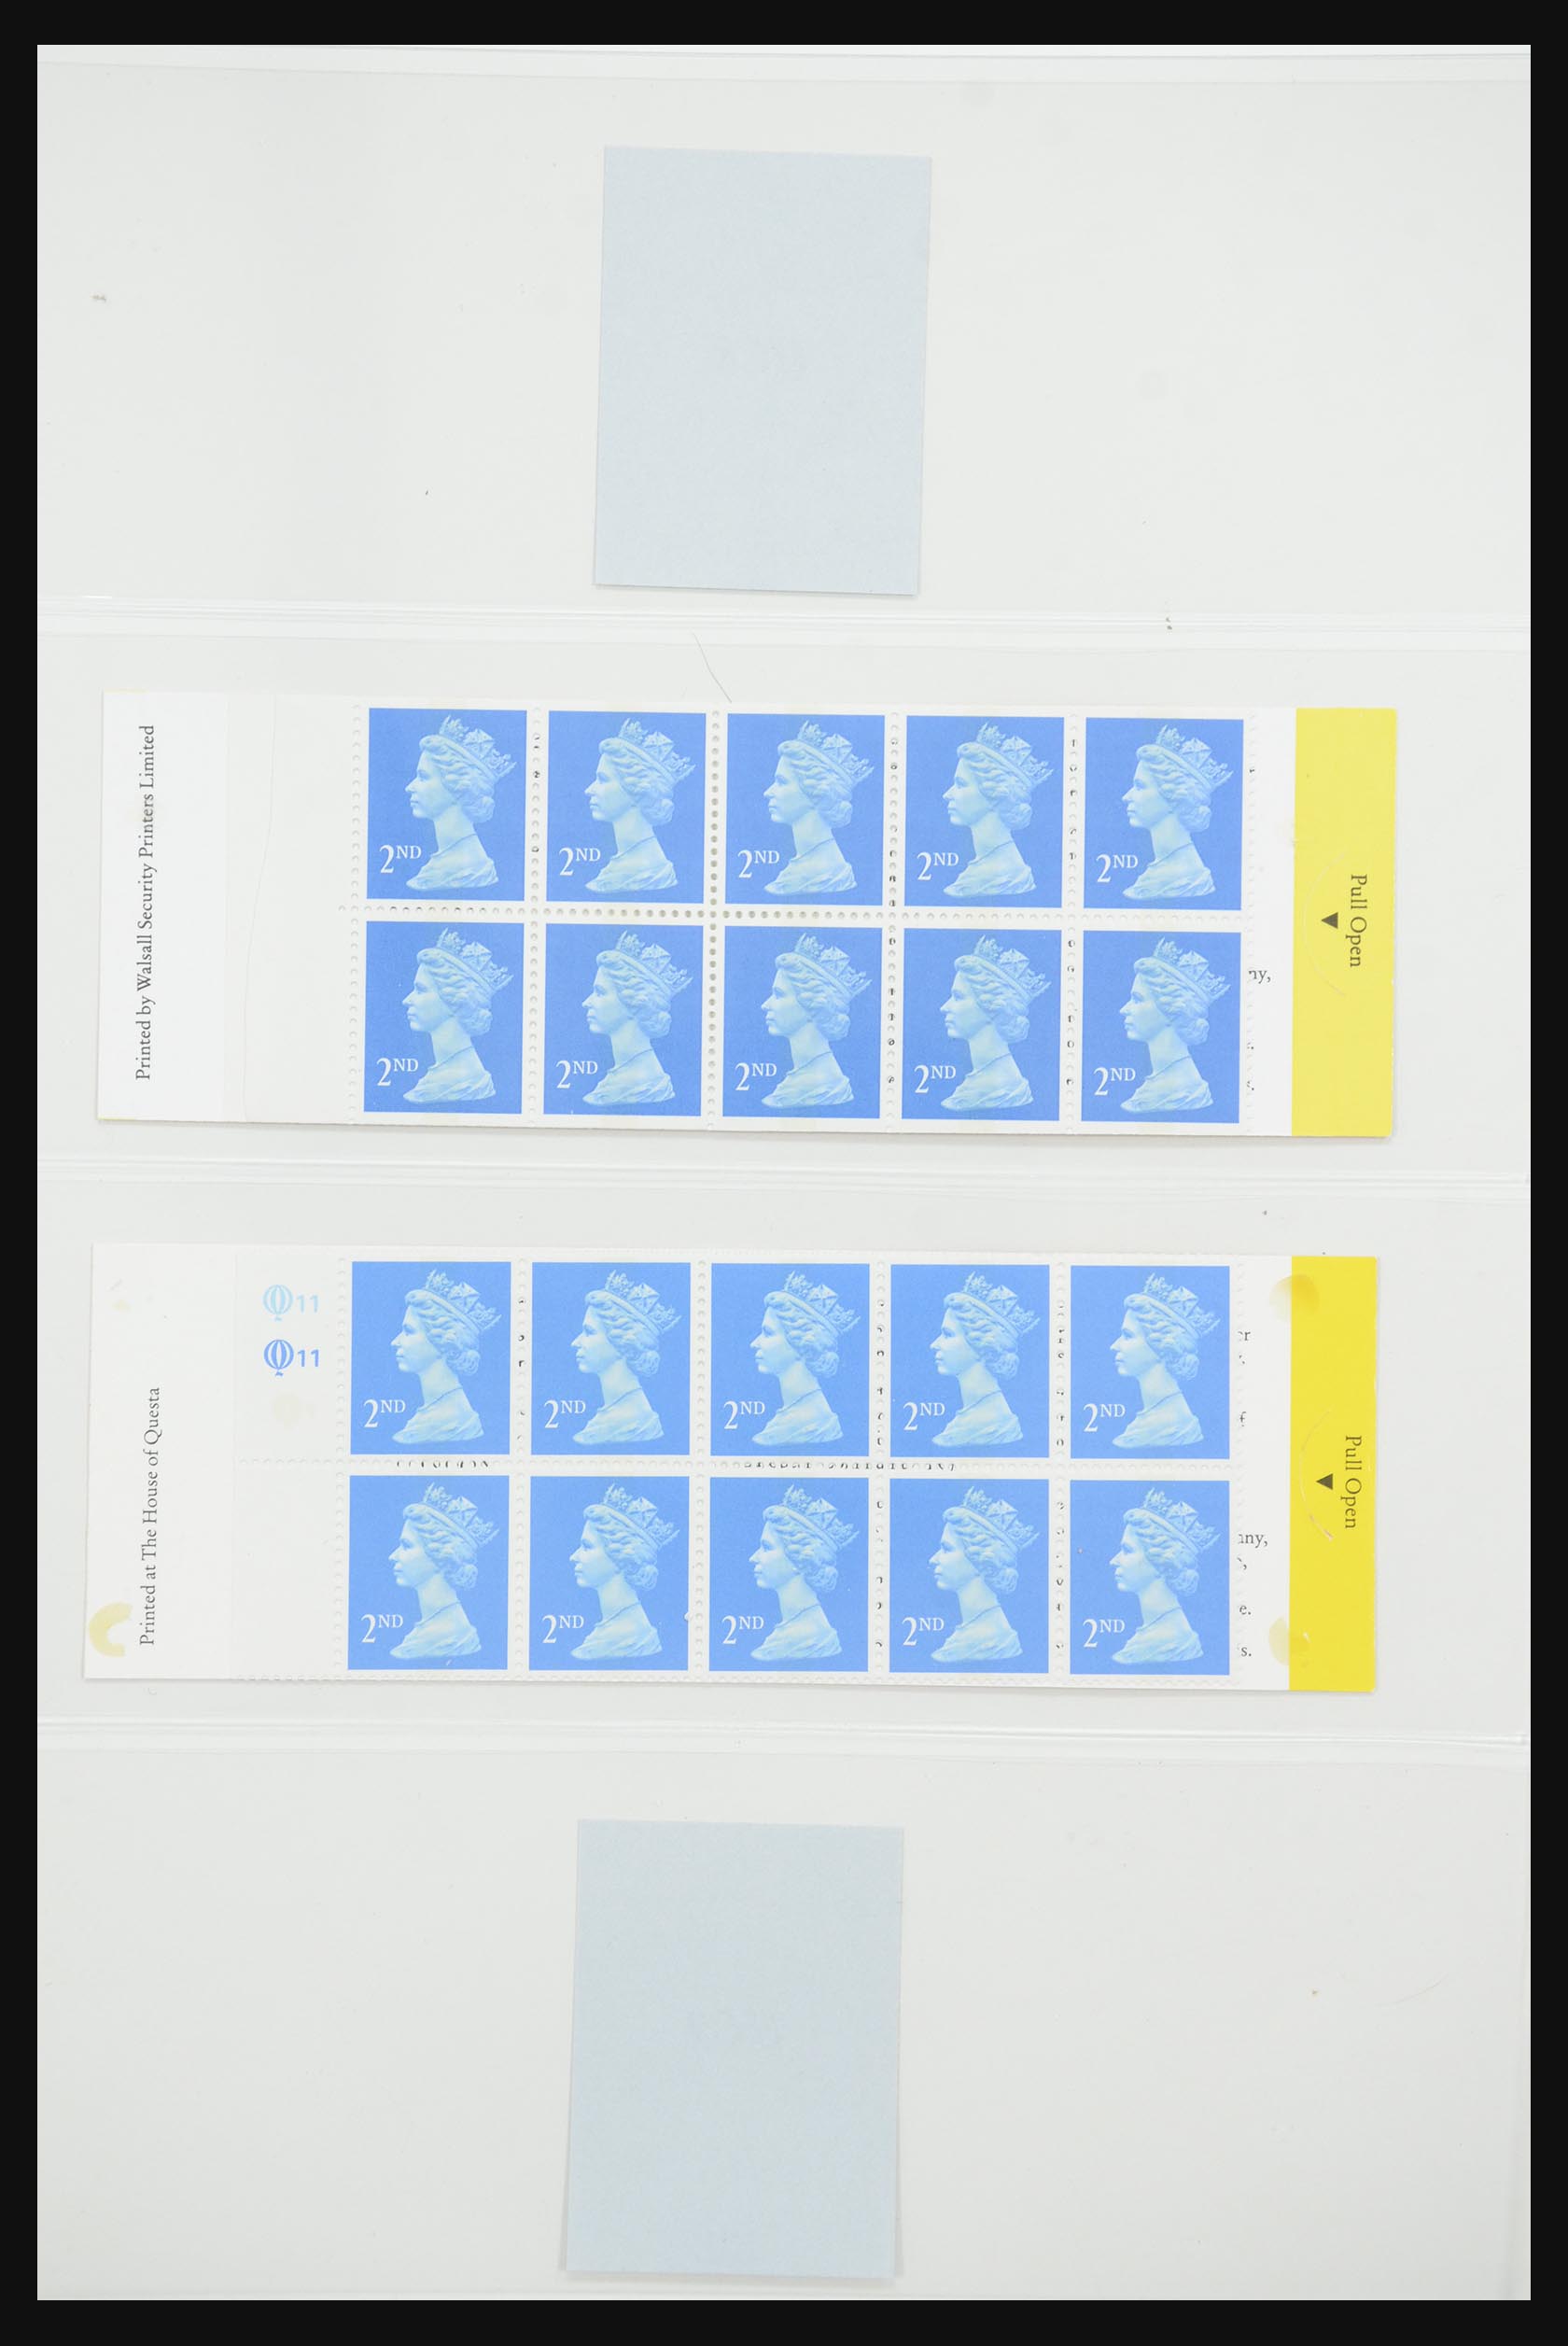 31960 072 - 31960 Engeland postzegelboekjes 1989-2000.